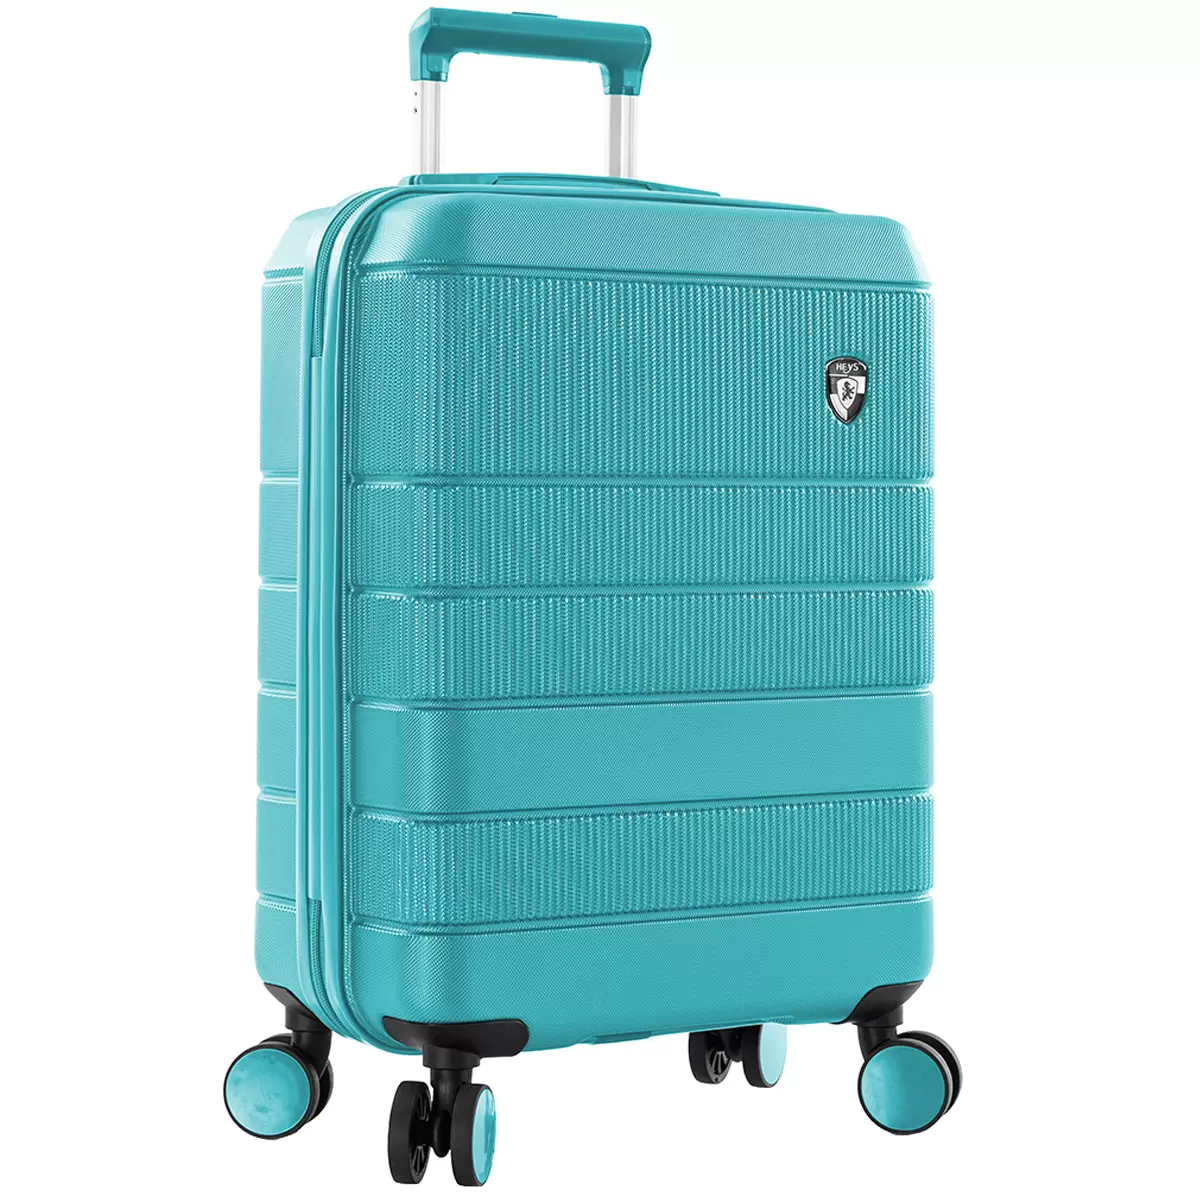 Heys Neo 3 Piece Hardside Luggage Set 